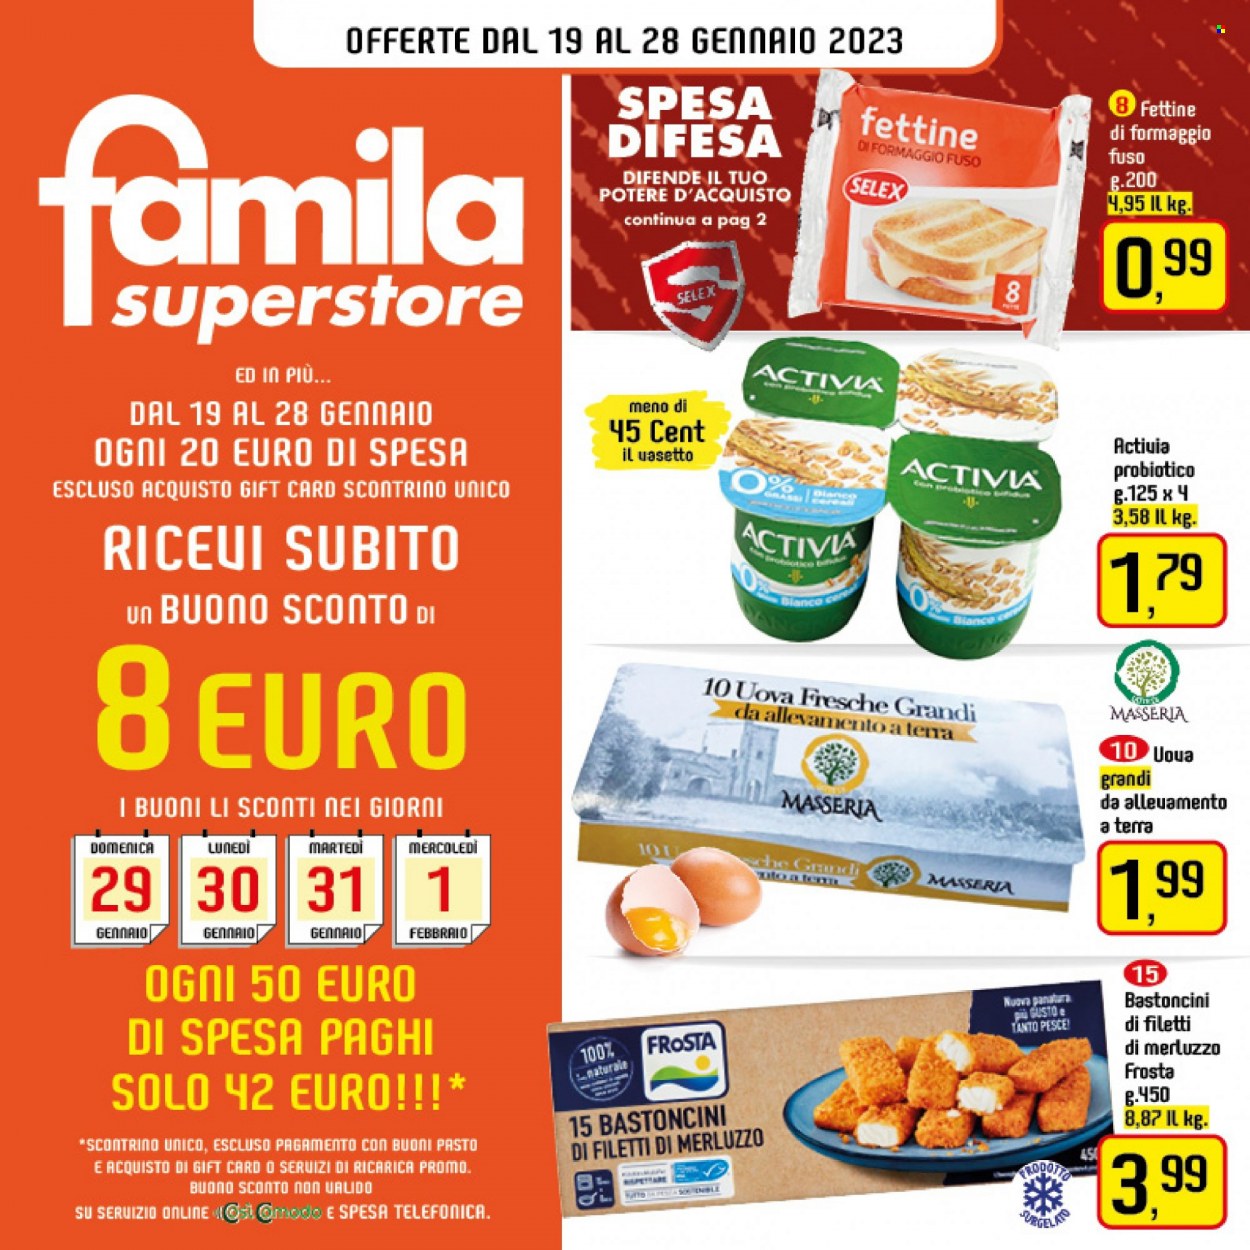 thumbnail - Volantino Famila - 19/1/2023 - 28/1/2023 - Prodotti in offerta - filetti di merluzzo, pesce, merluzzo, Frosta, bastoncini, Activia, uova, bastoncini di pesce. Pagina 1.